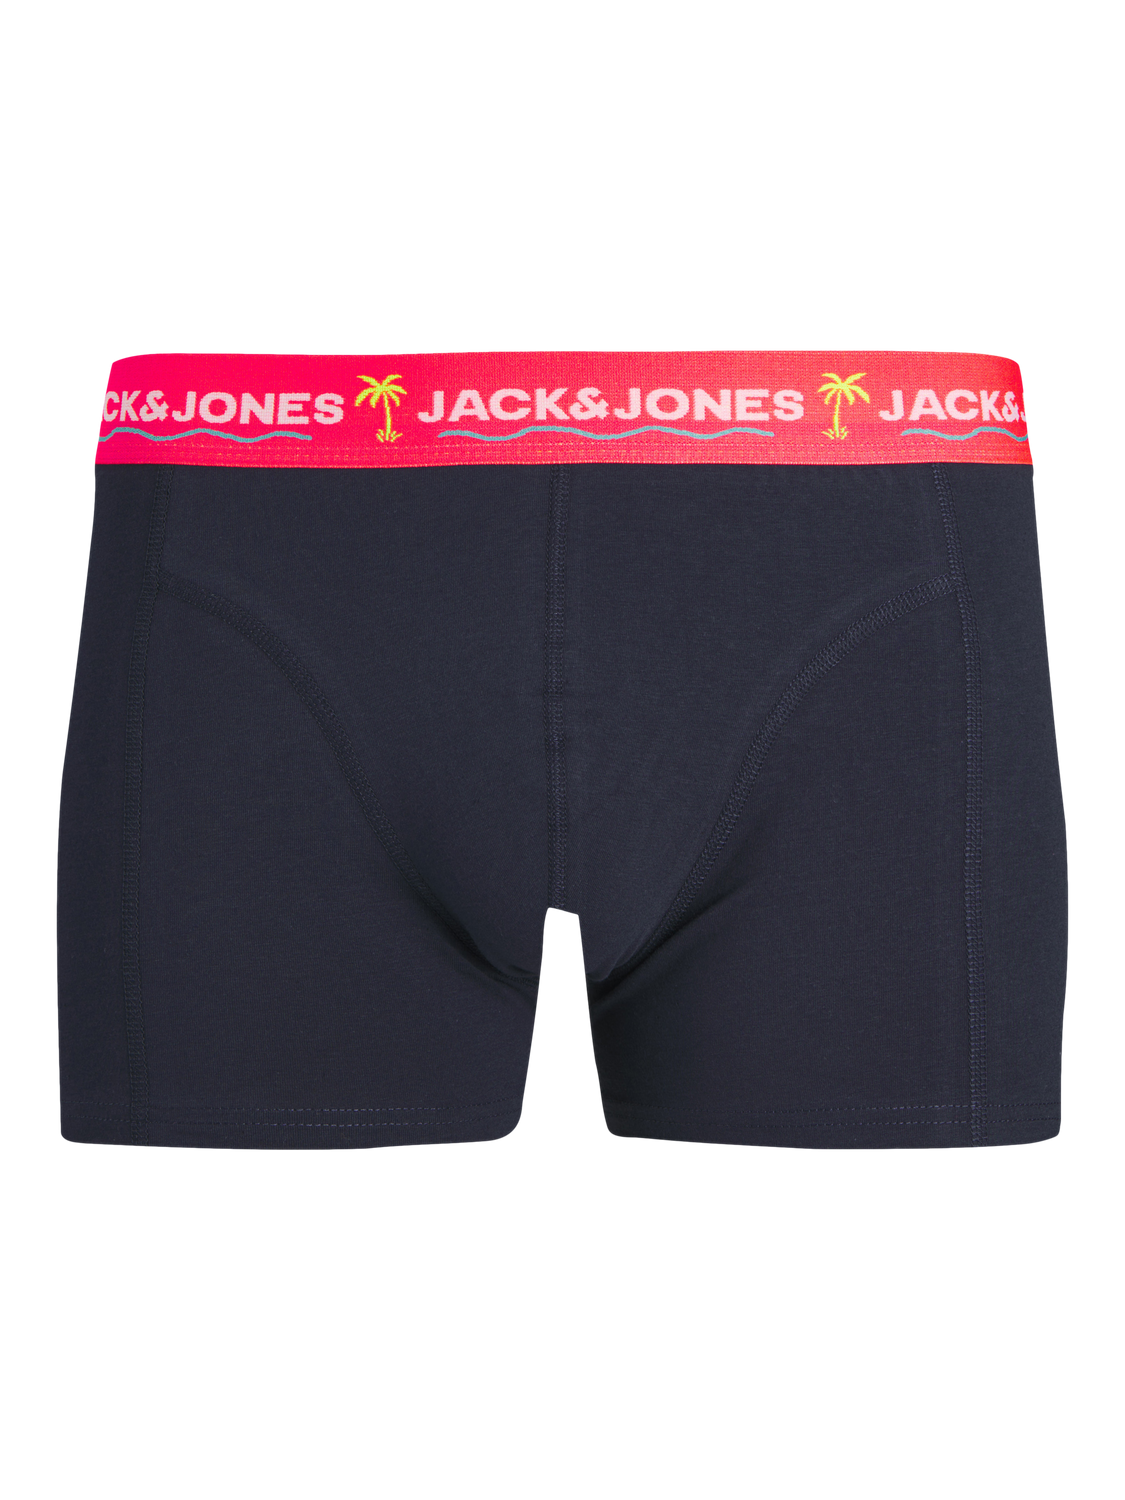 Jack & Jones Plus Size 3-pakuotės Trumpikės -Navy Blazer - 12257403